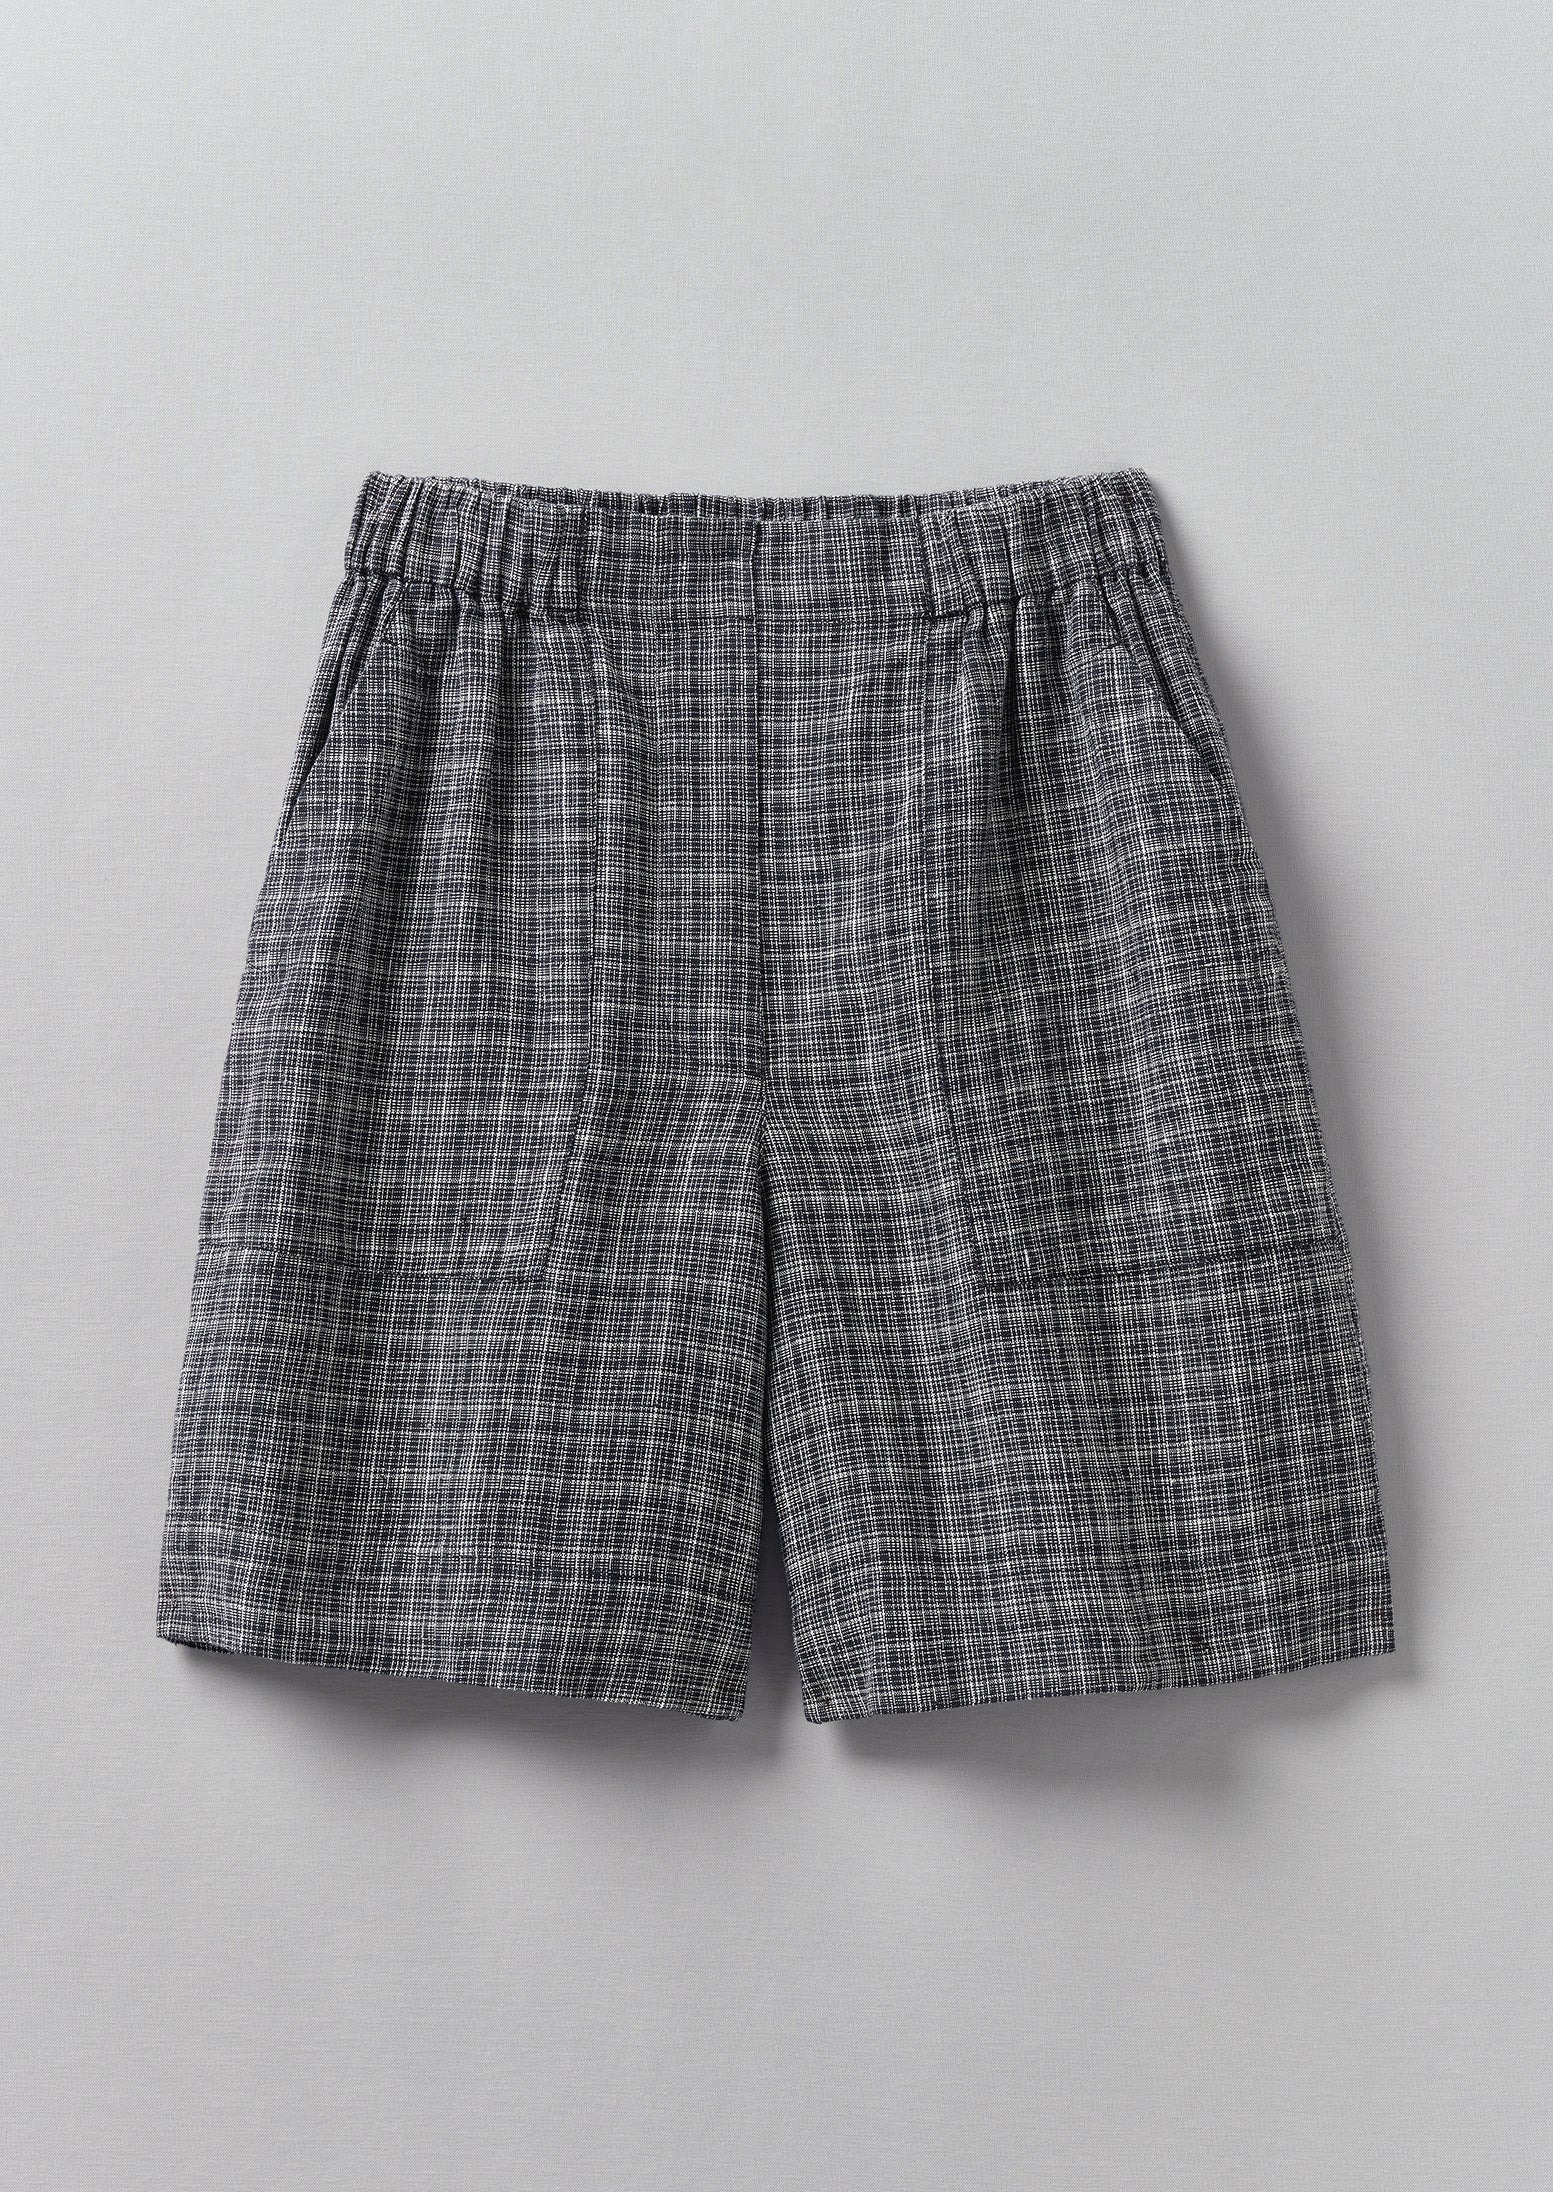 Asawa Check Linen Shorts, Charcoal